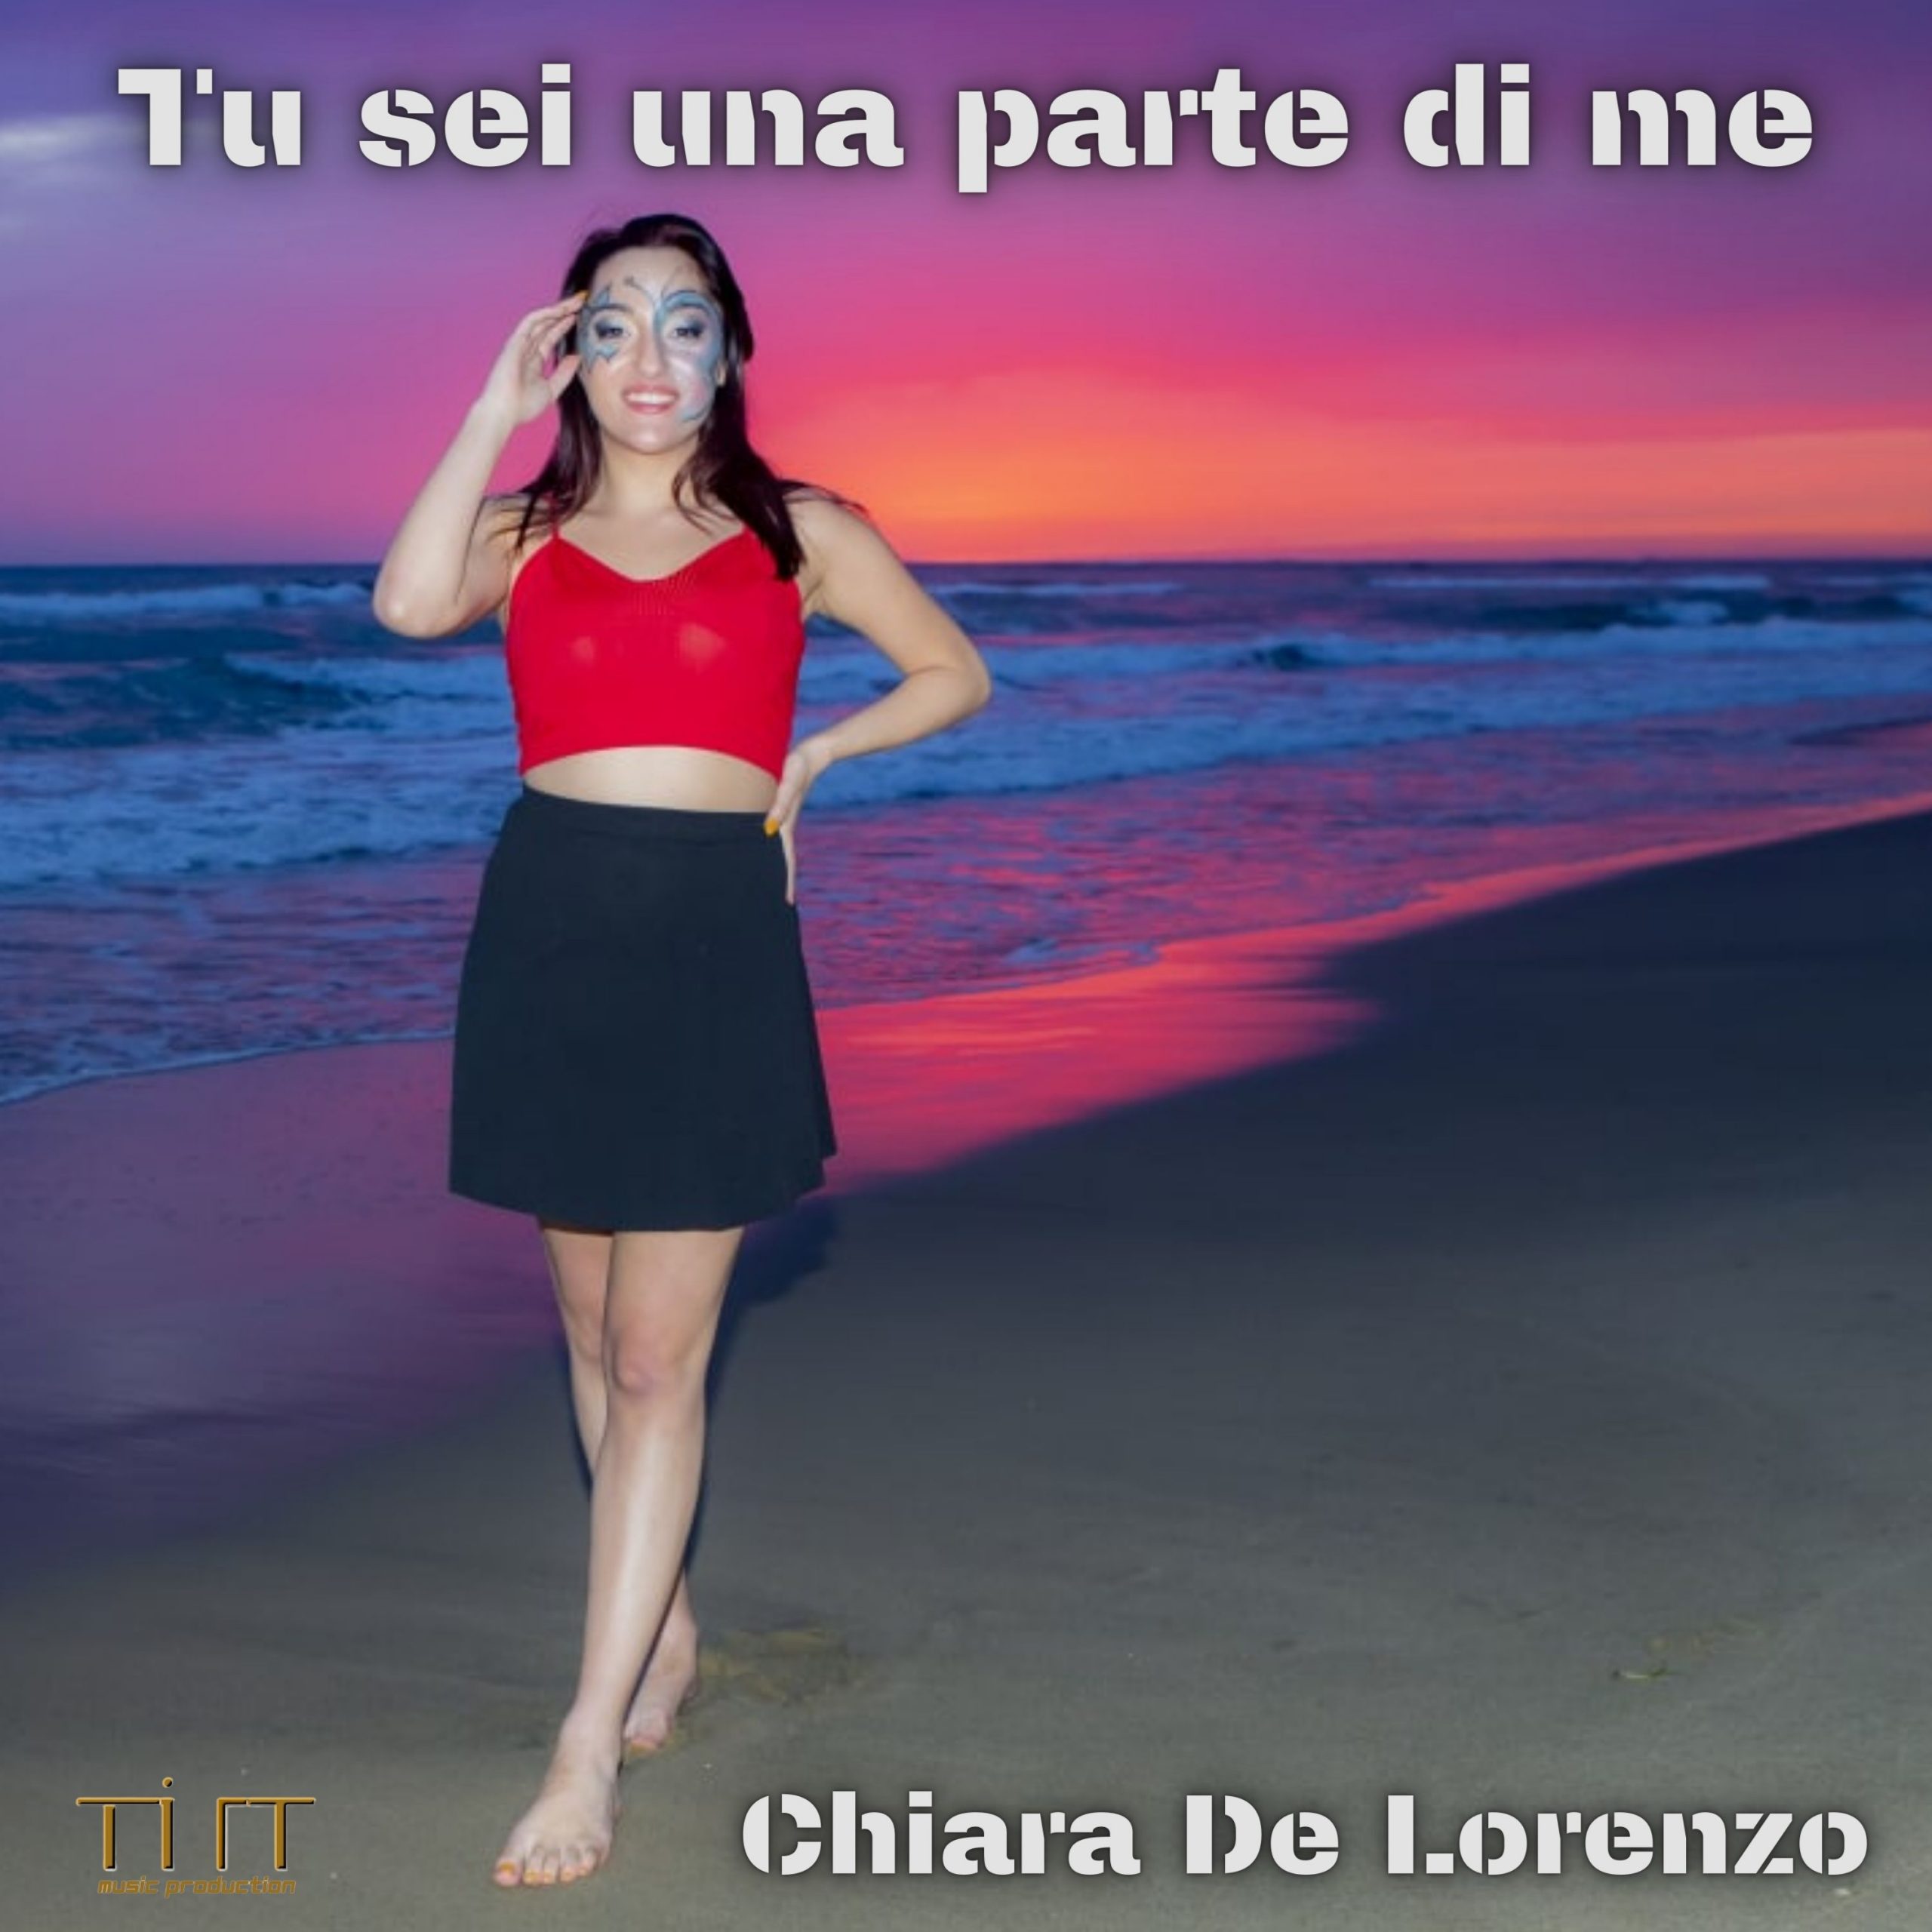 “Tu sei una parte di me”, l’esordio discografico di Chiara De lorenzo